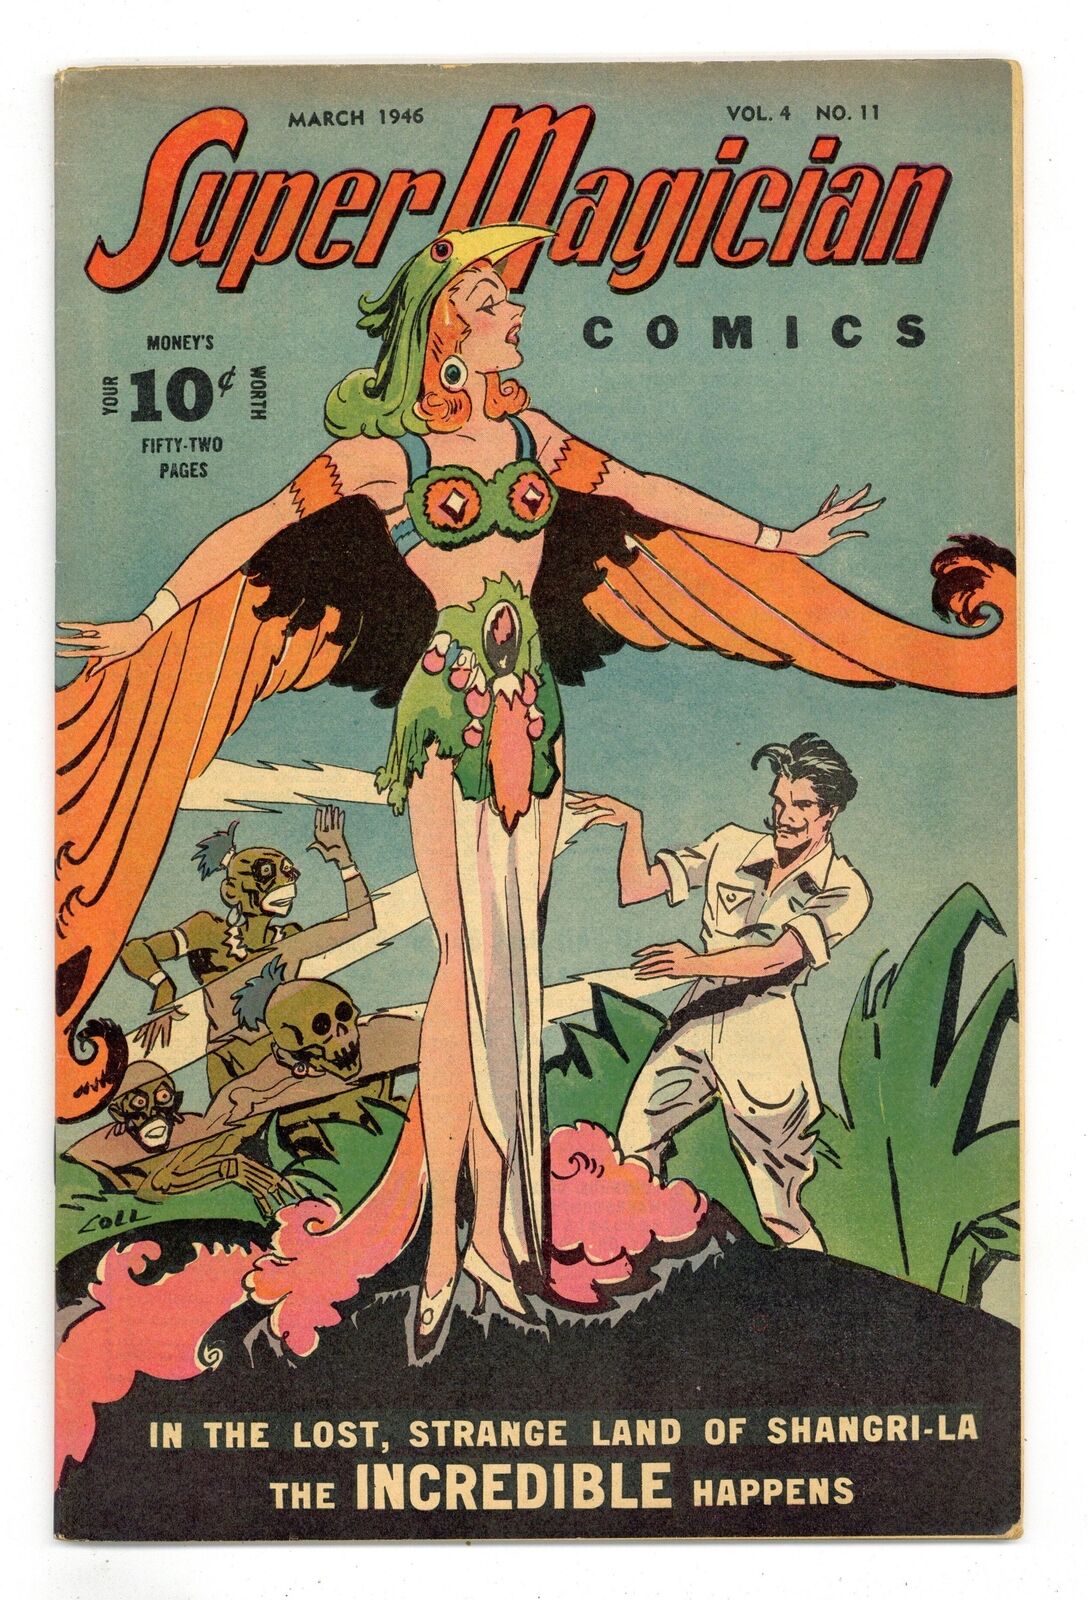 Super Magician Comics Vol. 4 #11 VG 4.0 1946